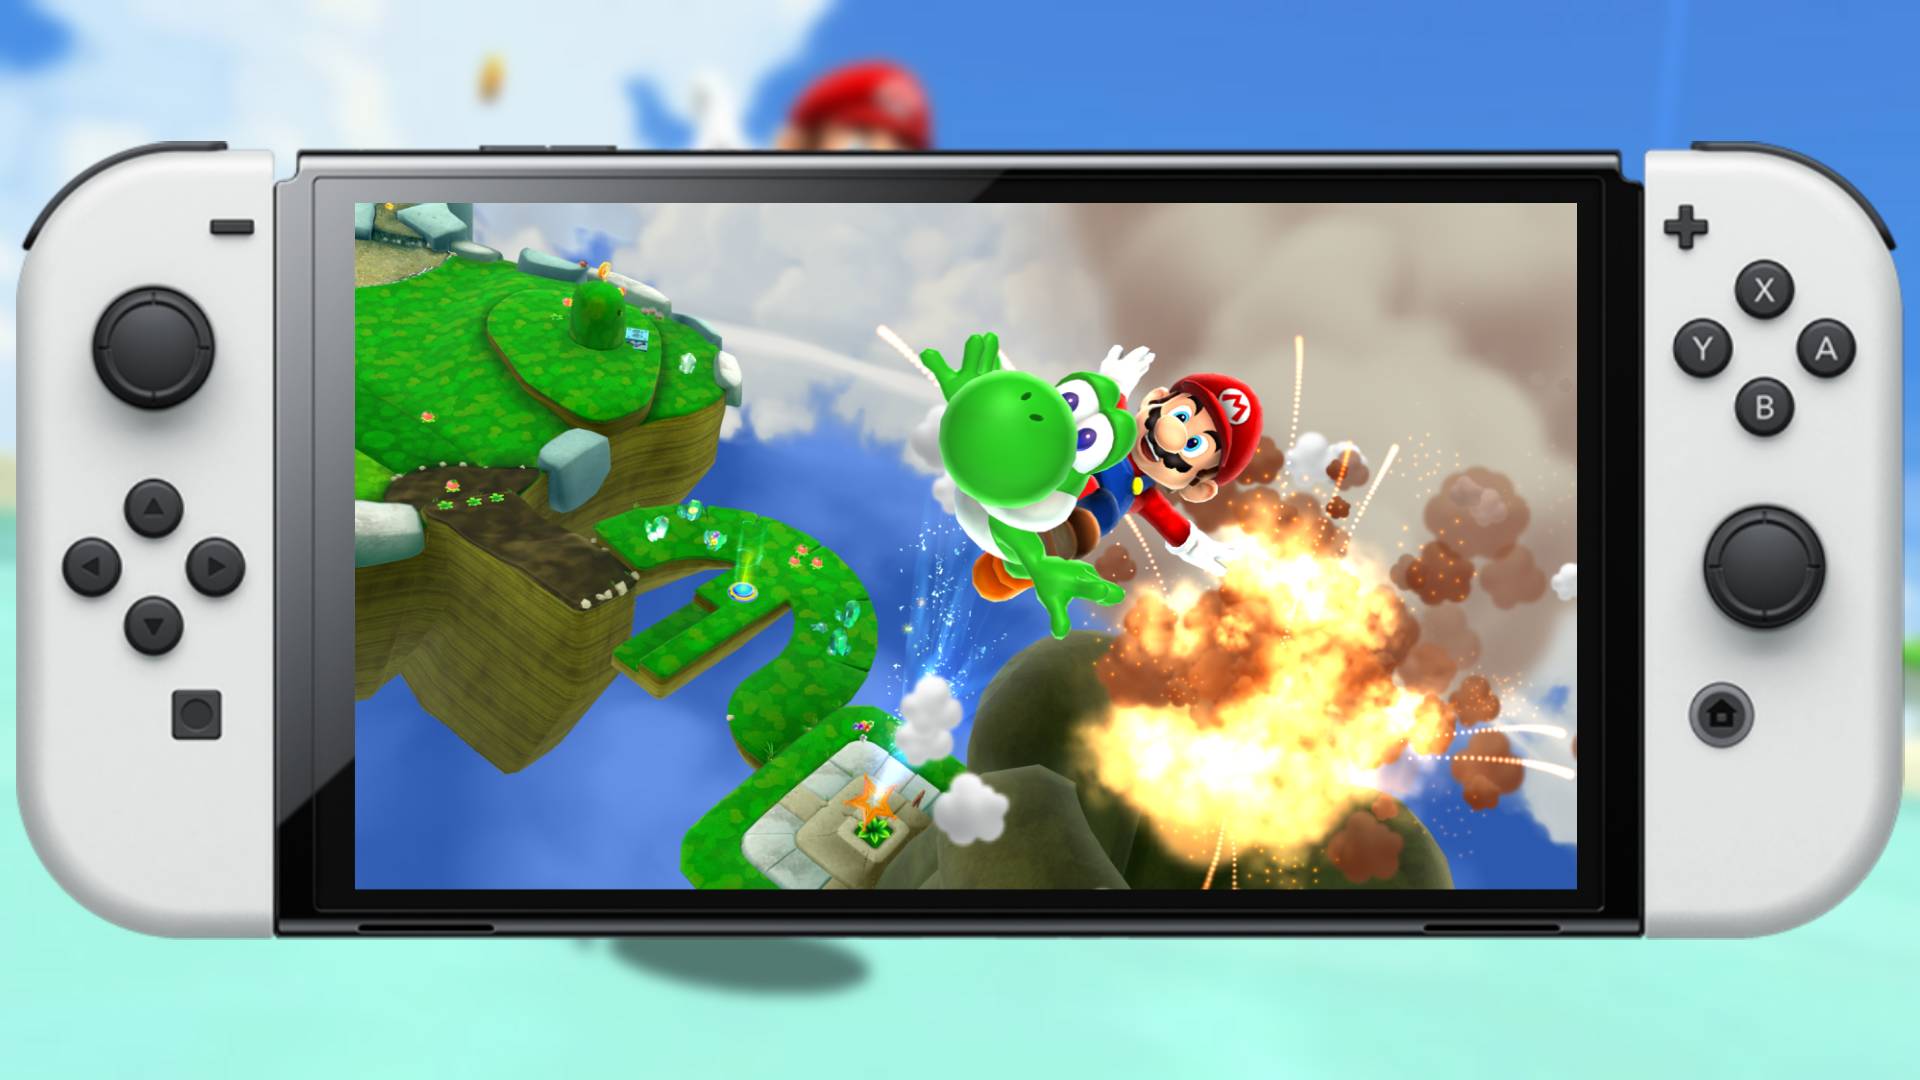  Super Mario Galaxy 2 : Video Games